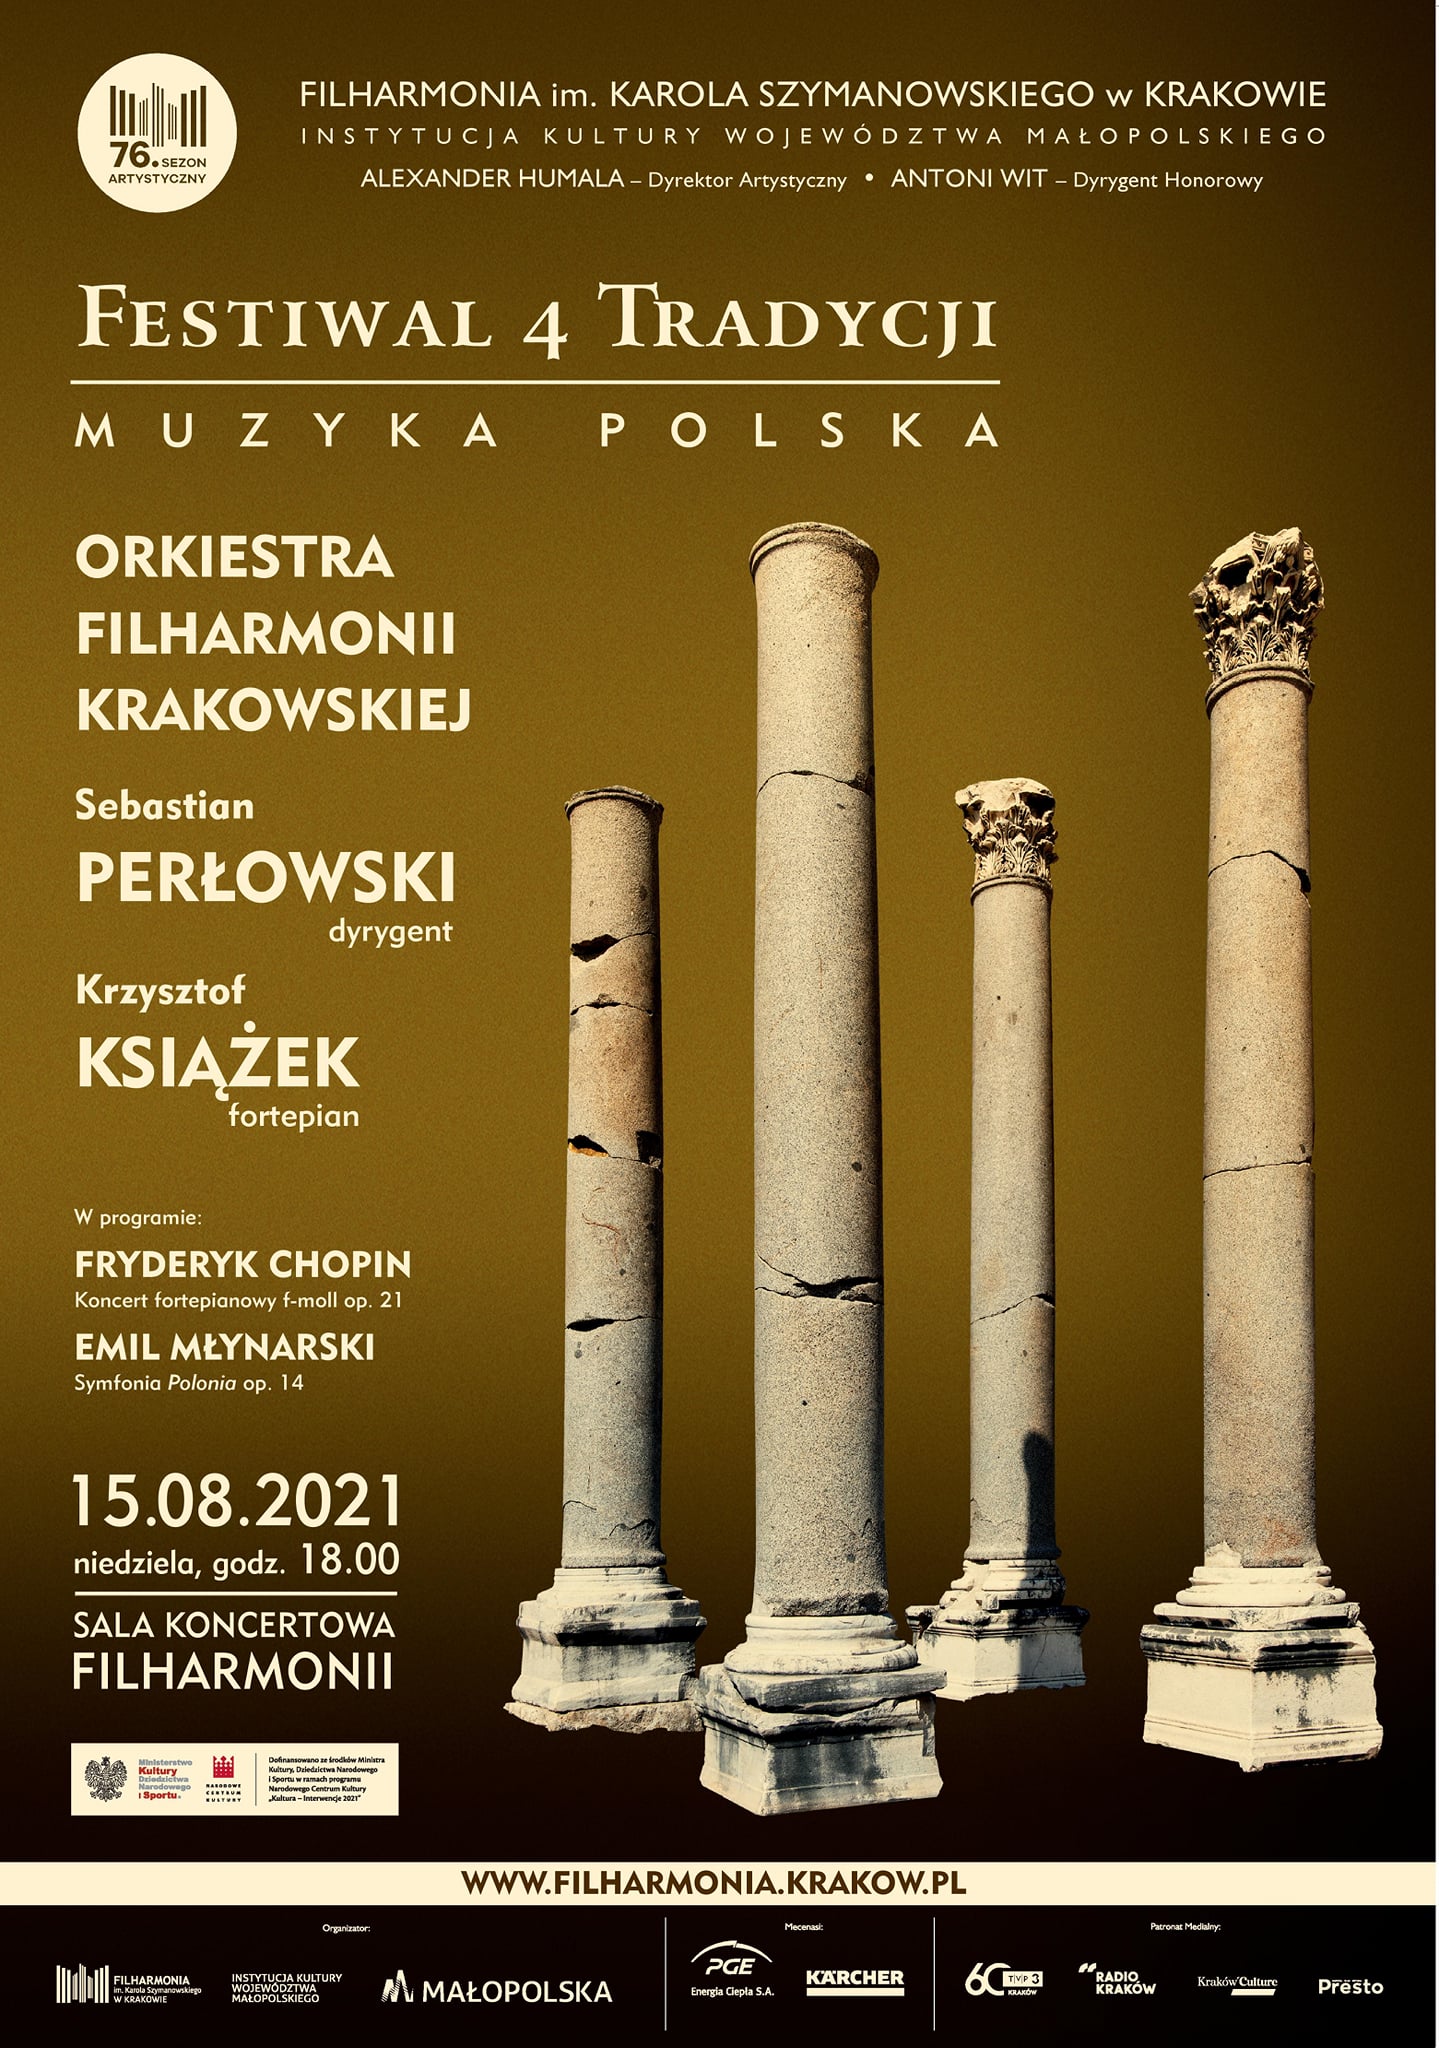 Festiwal 4 tradycji - plakat promujący wydarzenie.